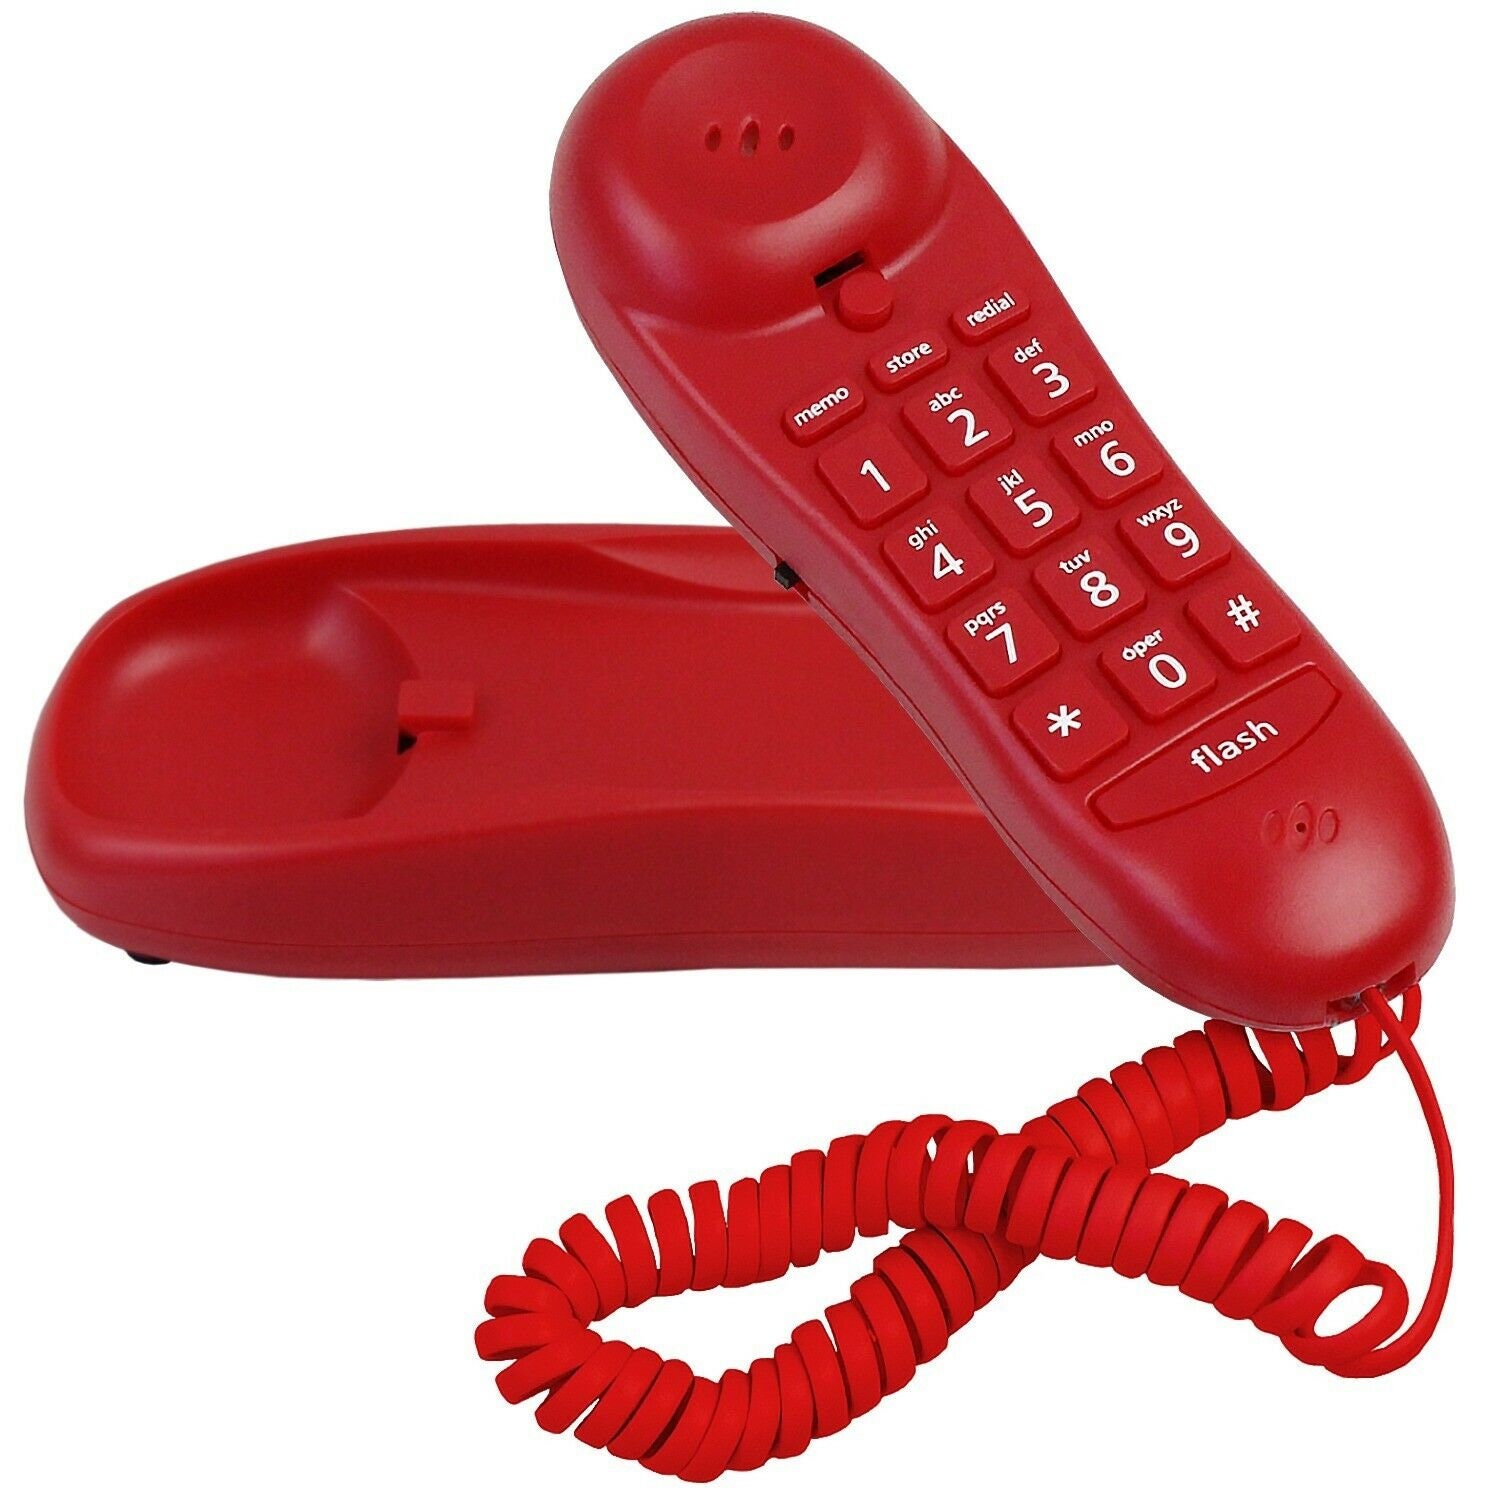 Телефон 60 11. M12 телефон. Современный телефон трубка Deluxe Slimline. Игрушка телефон кнопочный фиолетовый.